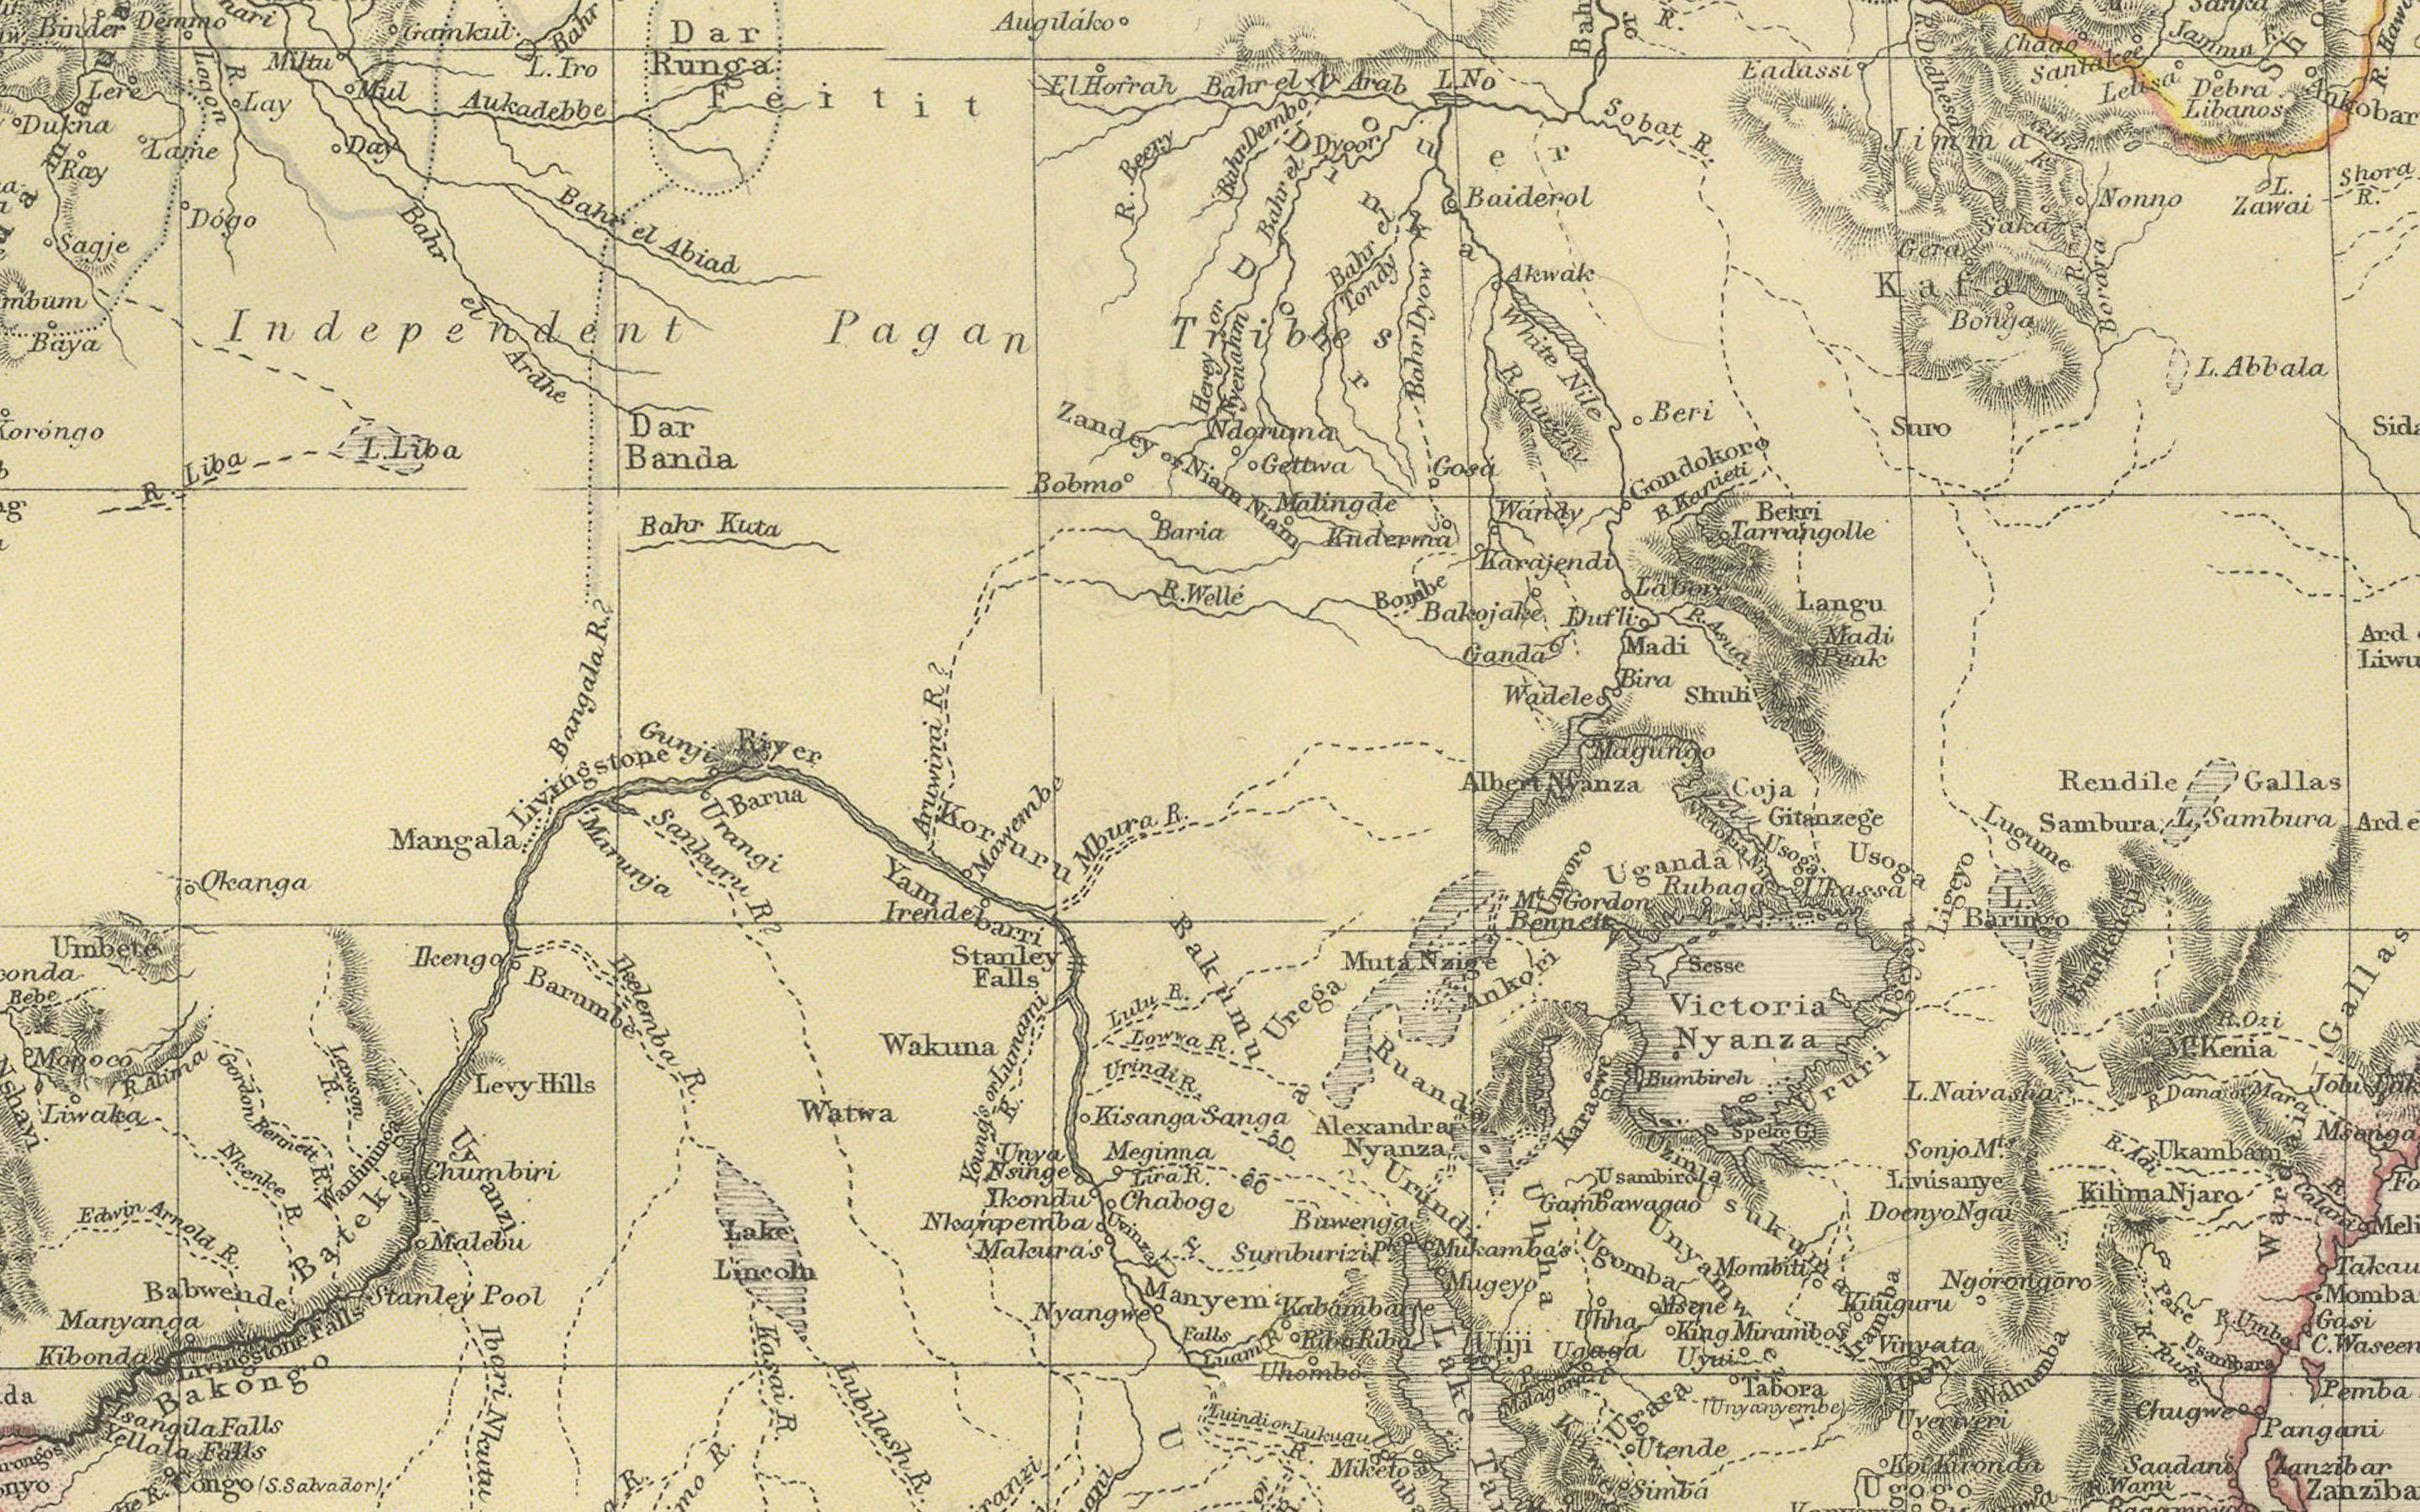 Das hochgeladene Bild ist eine historische Karte von Afrika aus dem Atlas von Blackie & Son aus dem Jahr 1882. Die Karte umfasst den gesamten afrikanischen Kontinent, wobei verschiedene Länder, Regionen und topografische Merkmale wie Gebirgszüge und